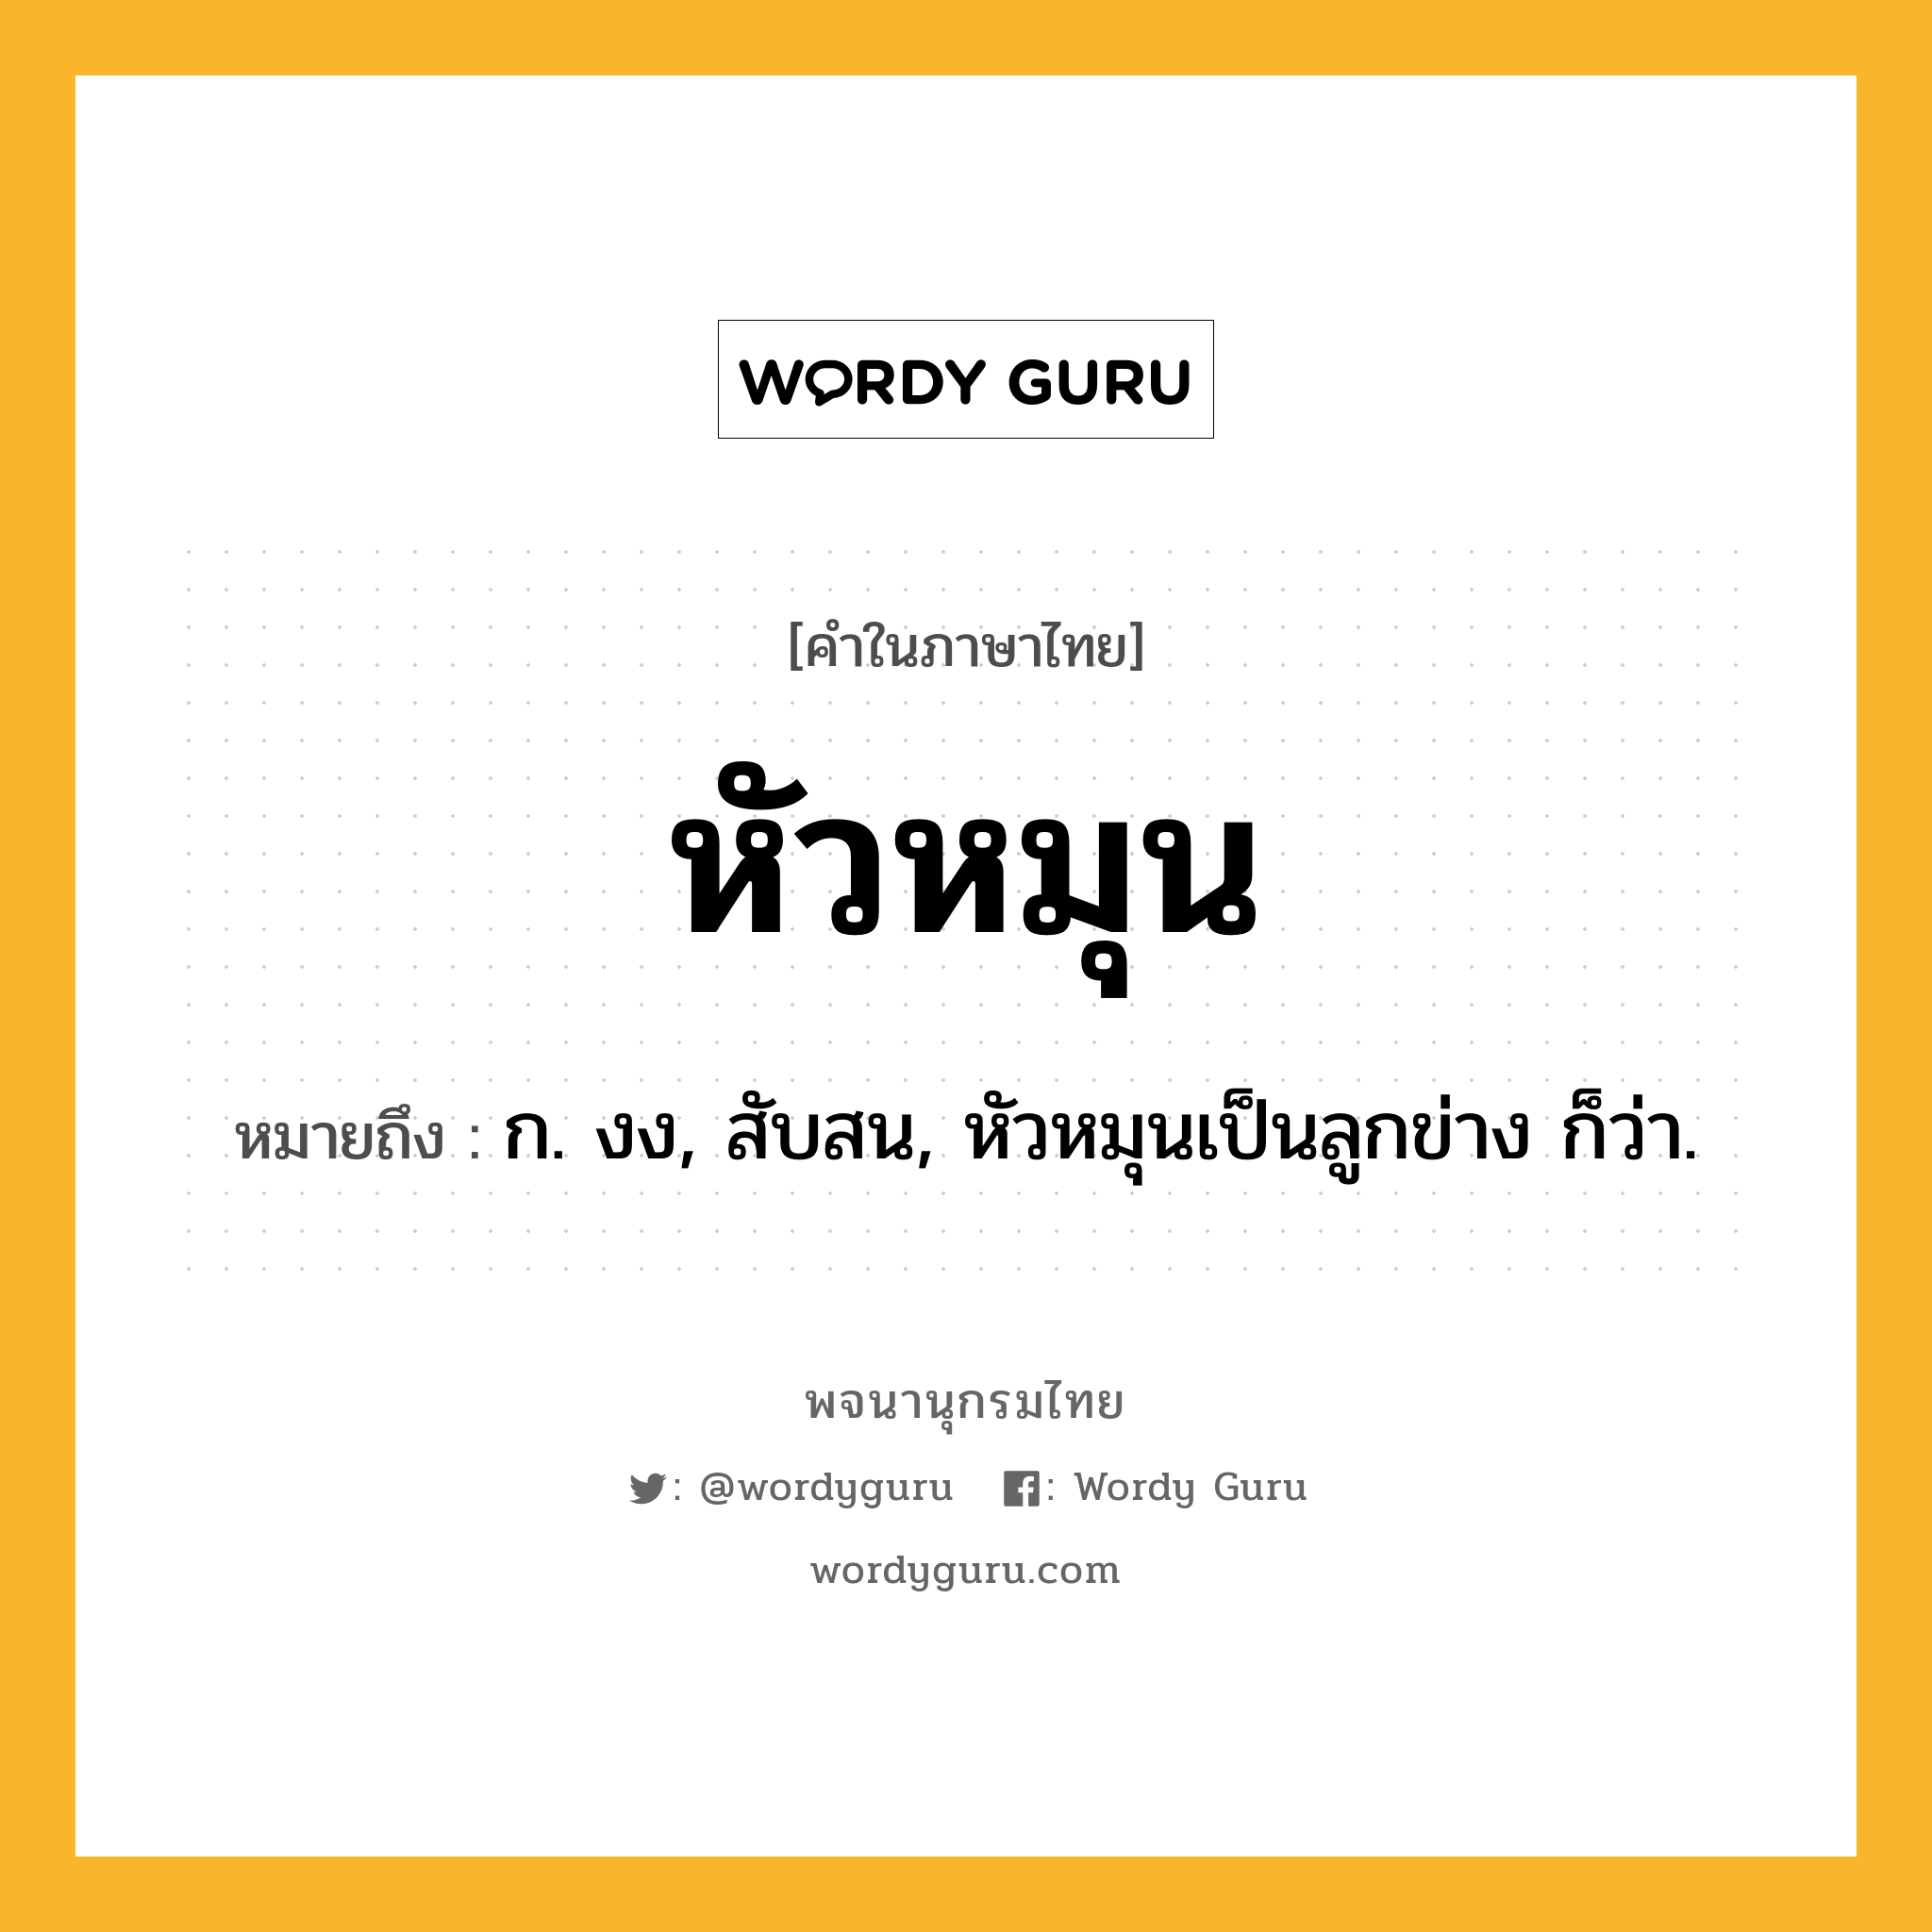 หัวหมุน หมายถึงอะไร?, คำในภาษาไทย หัวหมุน หมายถึง ก. งง, สับสน, หัวหมุนเป็นลูกข่าง ก็ว่า.